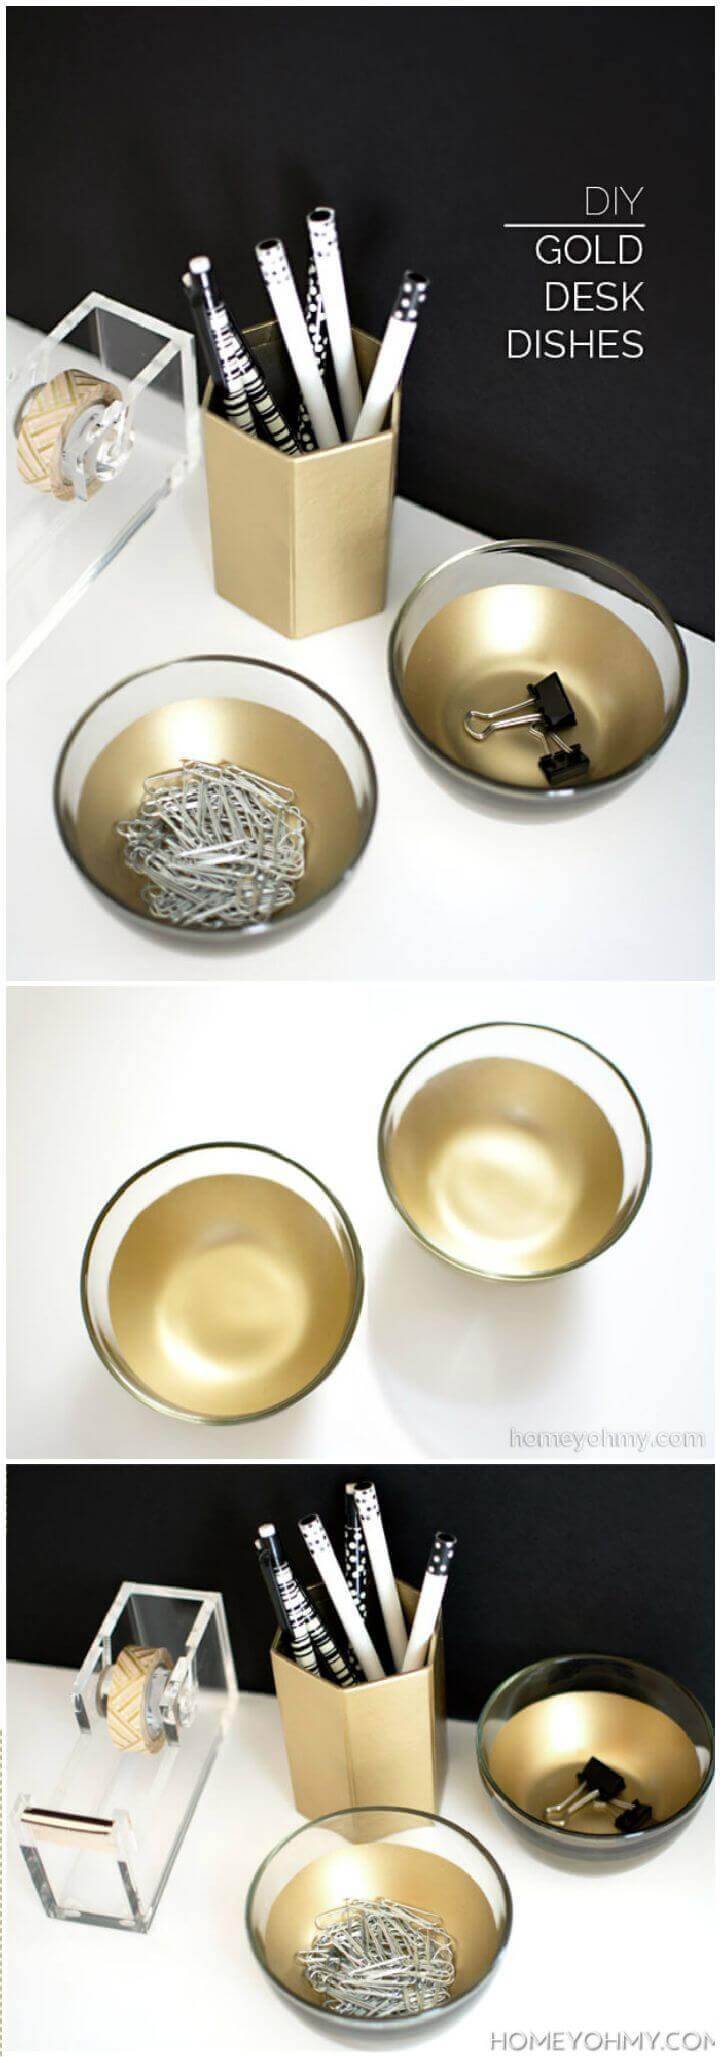 DIY Gold Desk Dishes